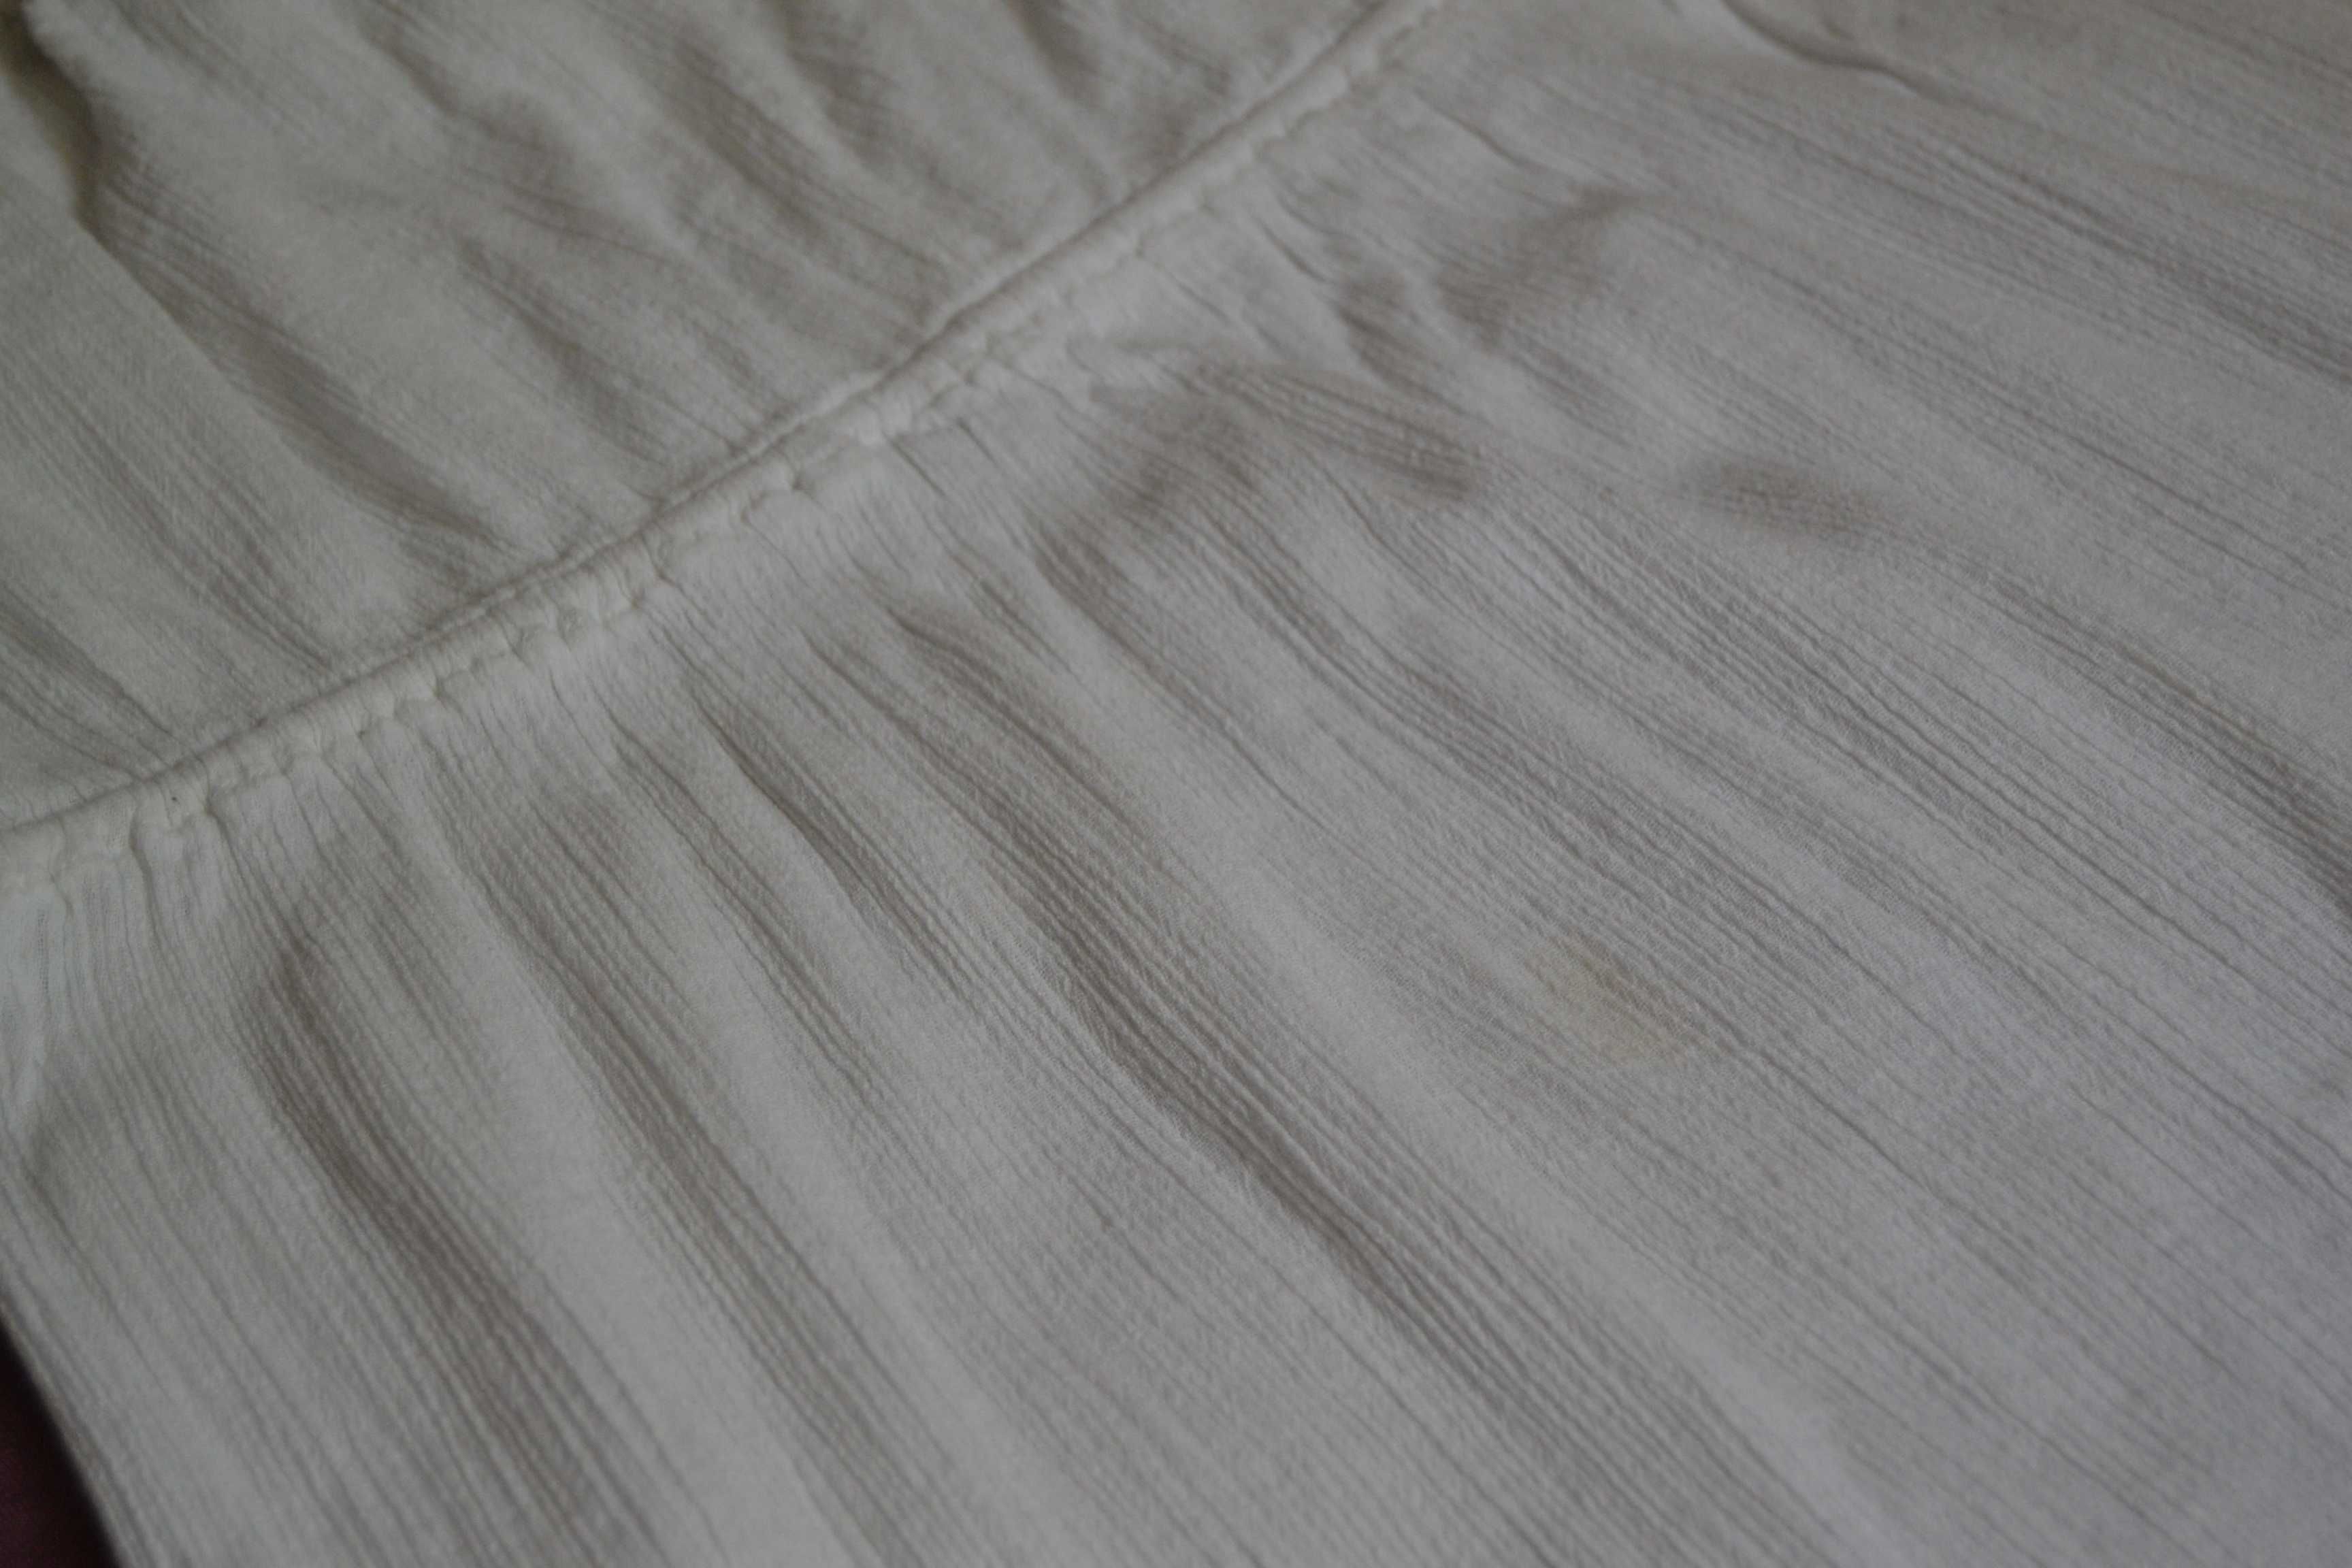 Cienka biała sukienka F&F L boho 100% bawełna S/M 36 38